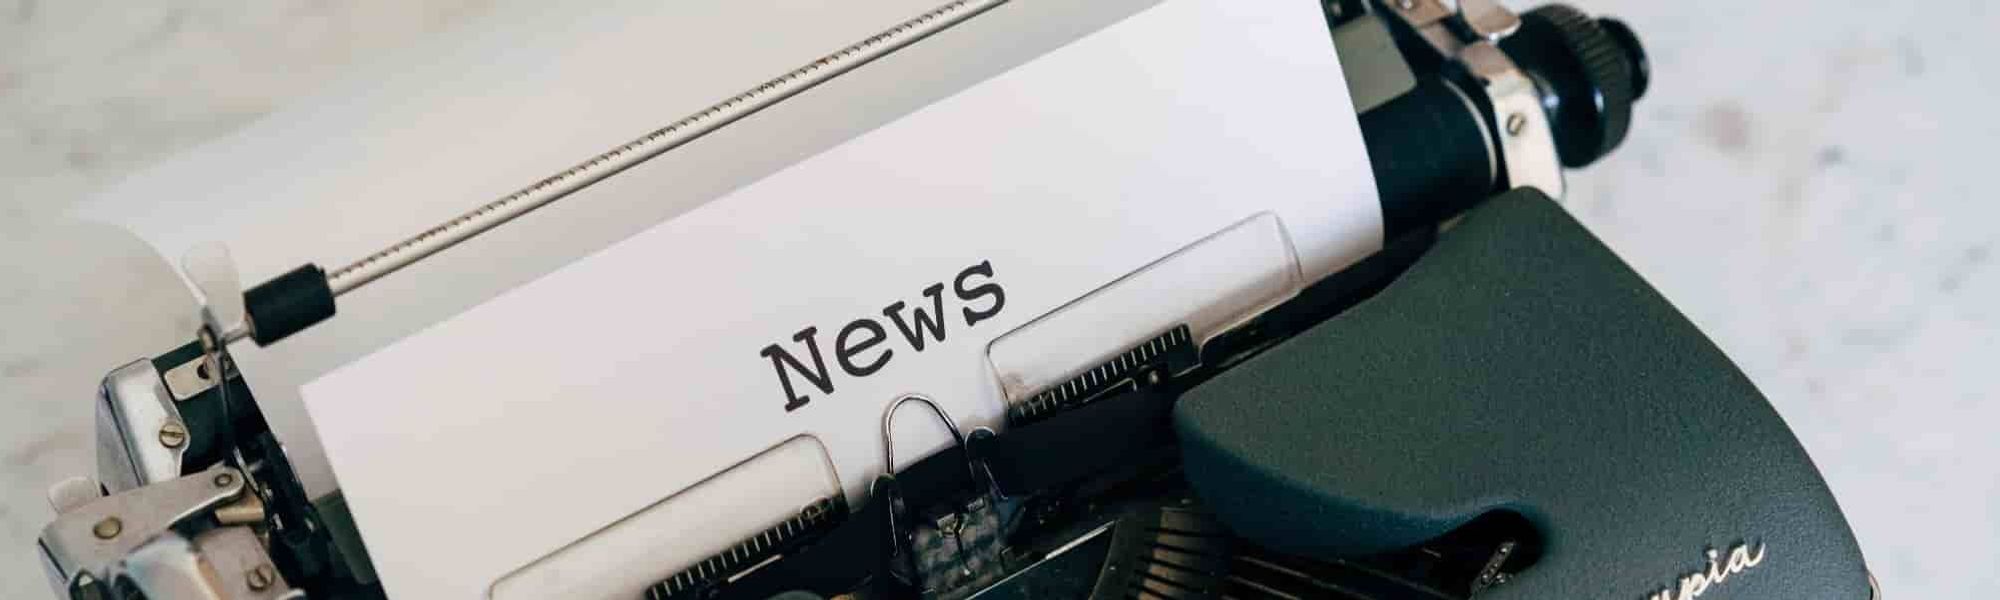 Black typewriter news print